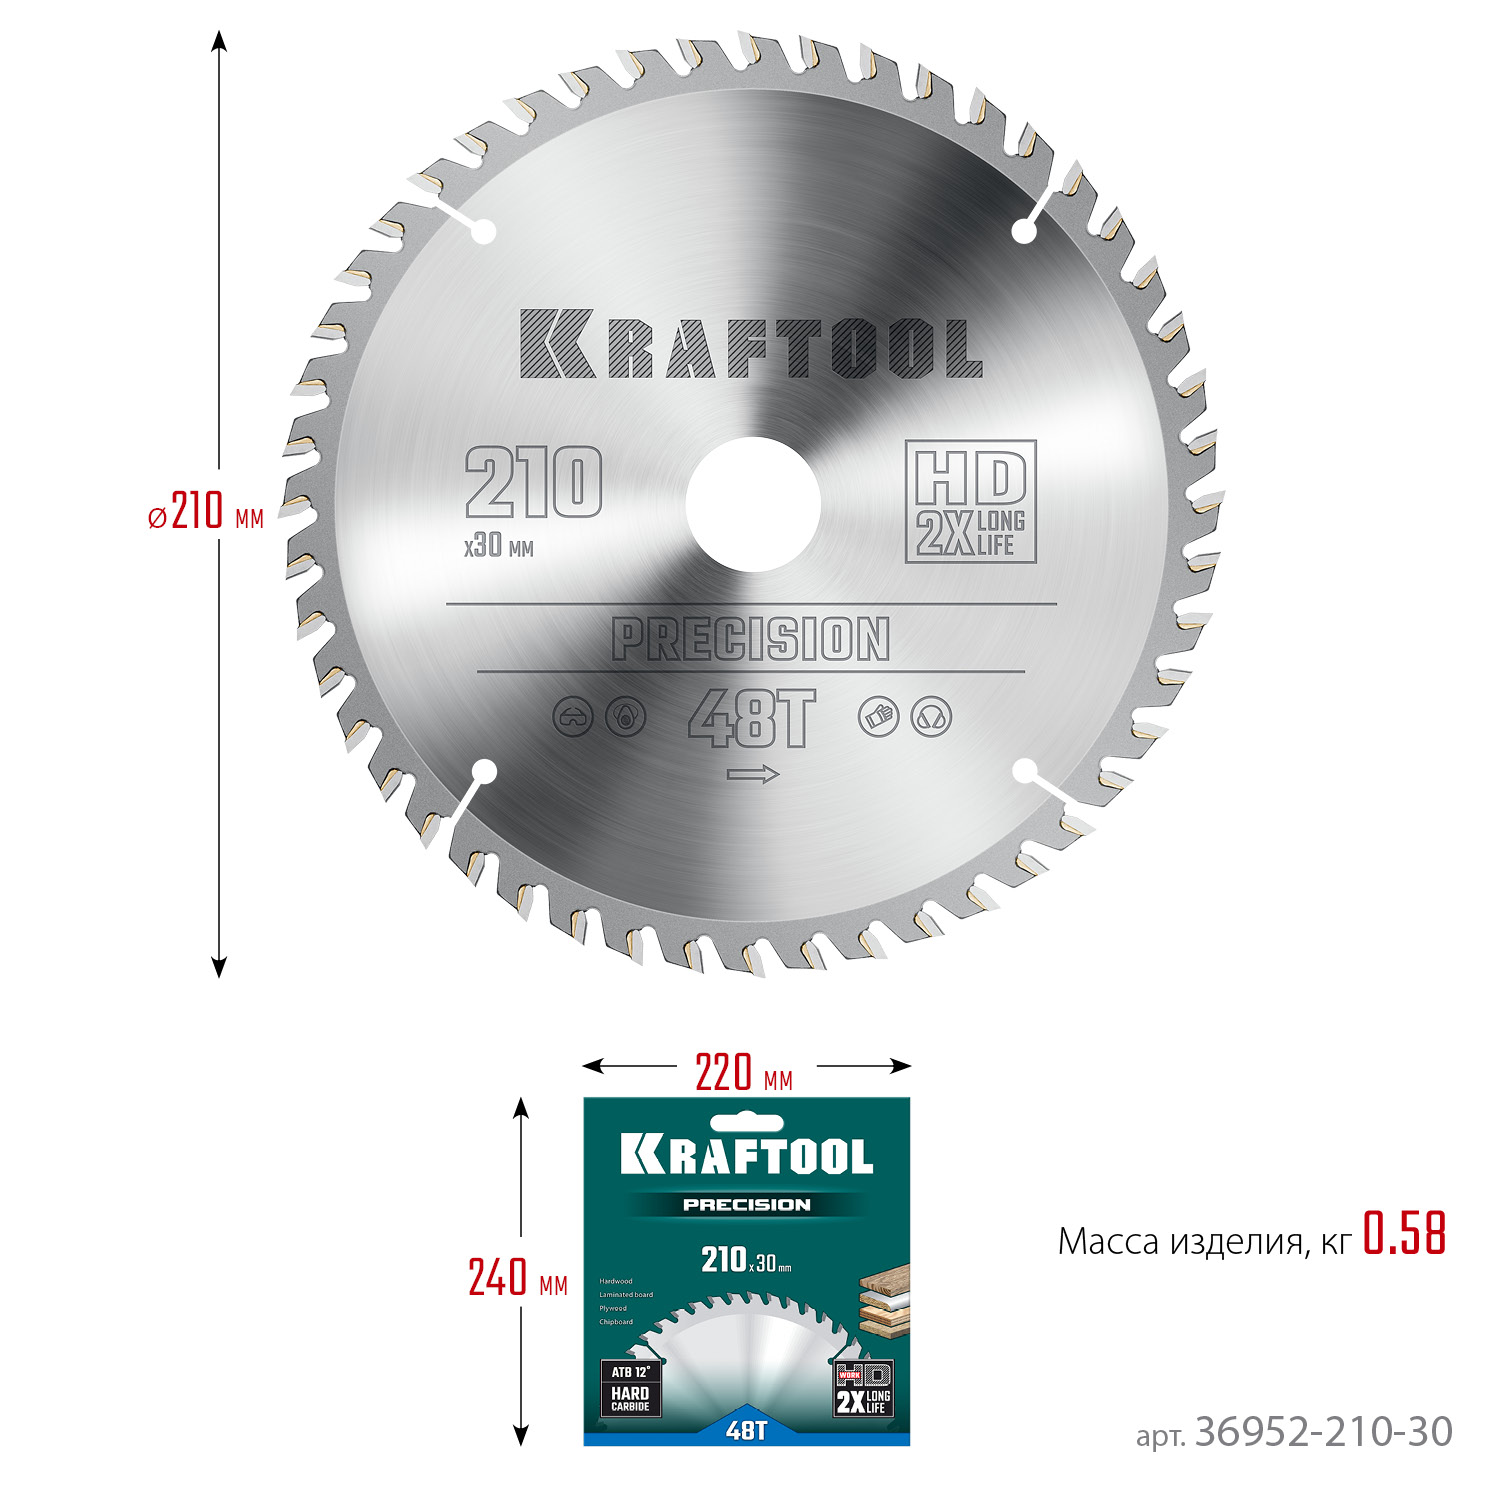 KRAFTOOL Precision, 210 х 30 мм, 48Т, пильный диск по дереву (36952-210-30)